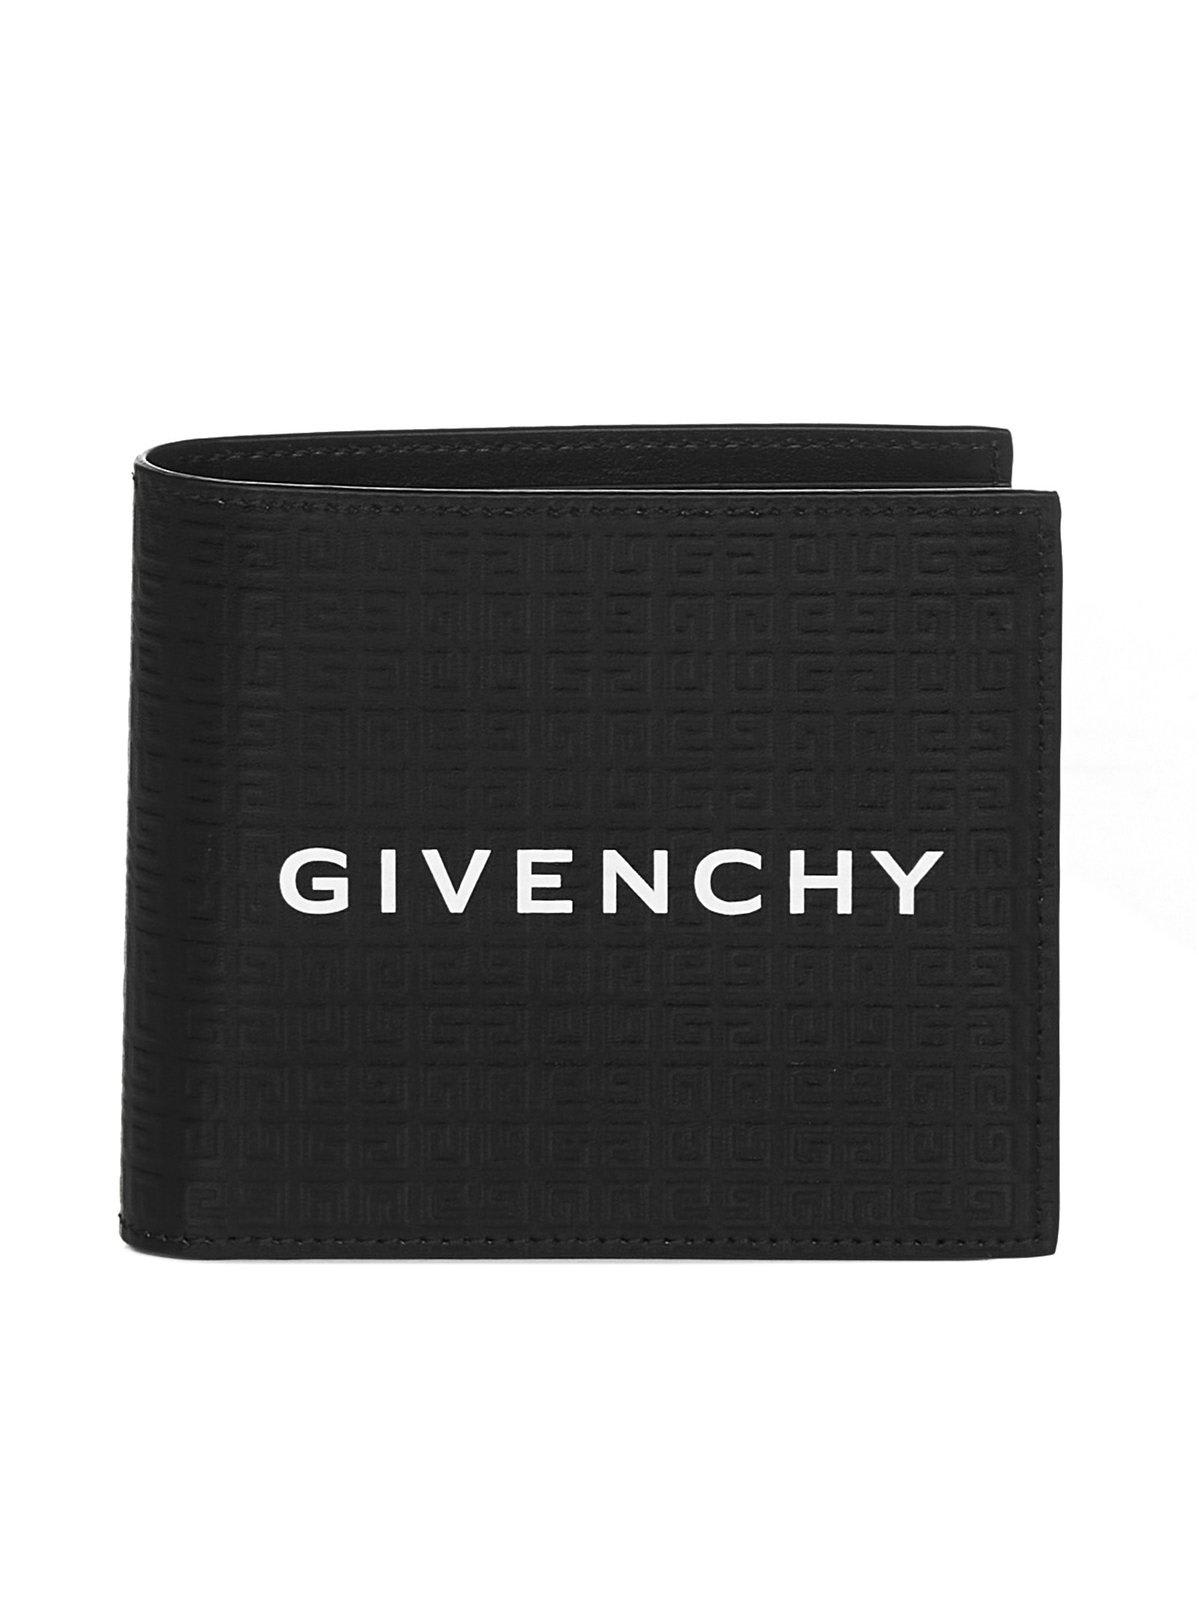 Givenchy Logo Printed Bi-fold Wallet